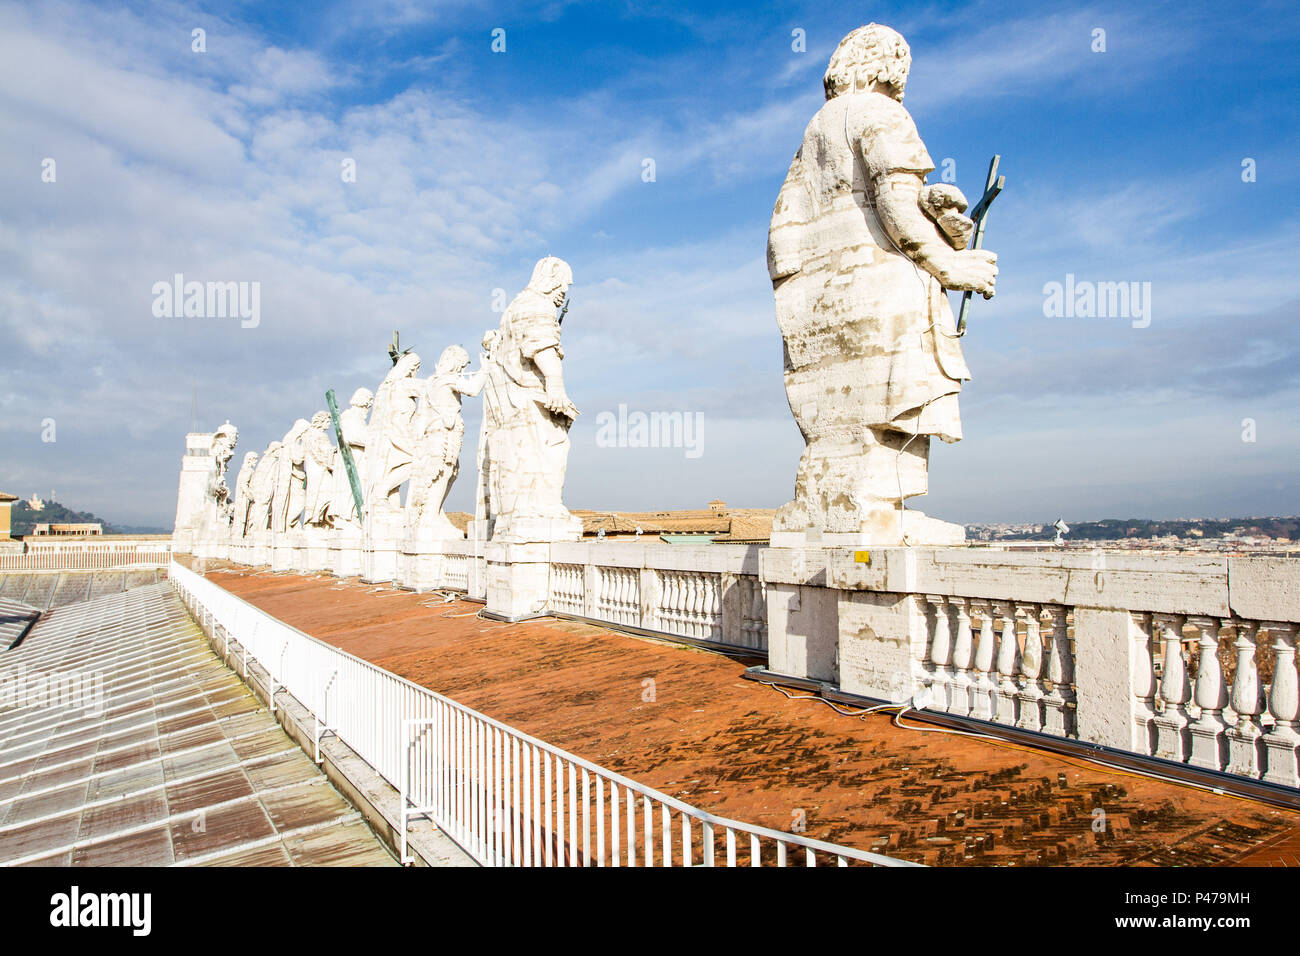 Estátuas dos Apóstolos no teto da Basílica de São Pedro. Cidade do Vaticano, Vaticano - 27/12/2012. Foto: Ricardo Ribas / Fotoarena Stock Photo